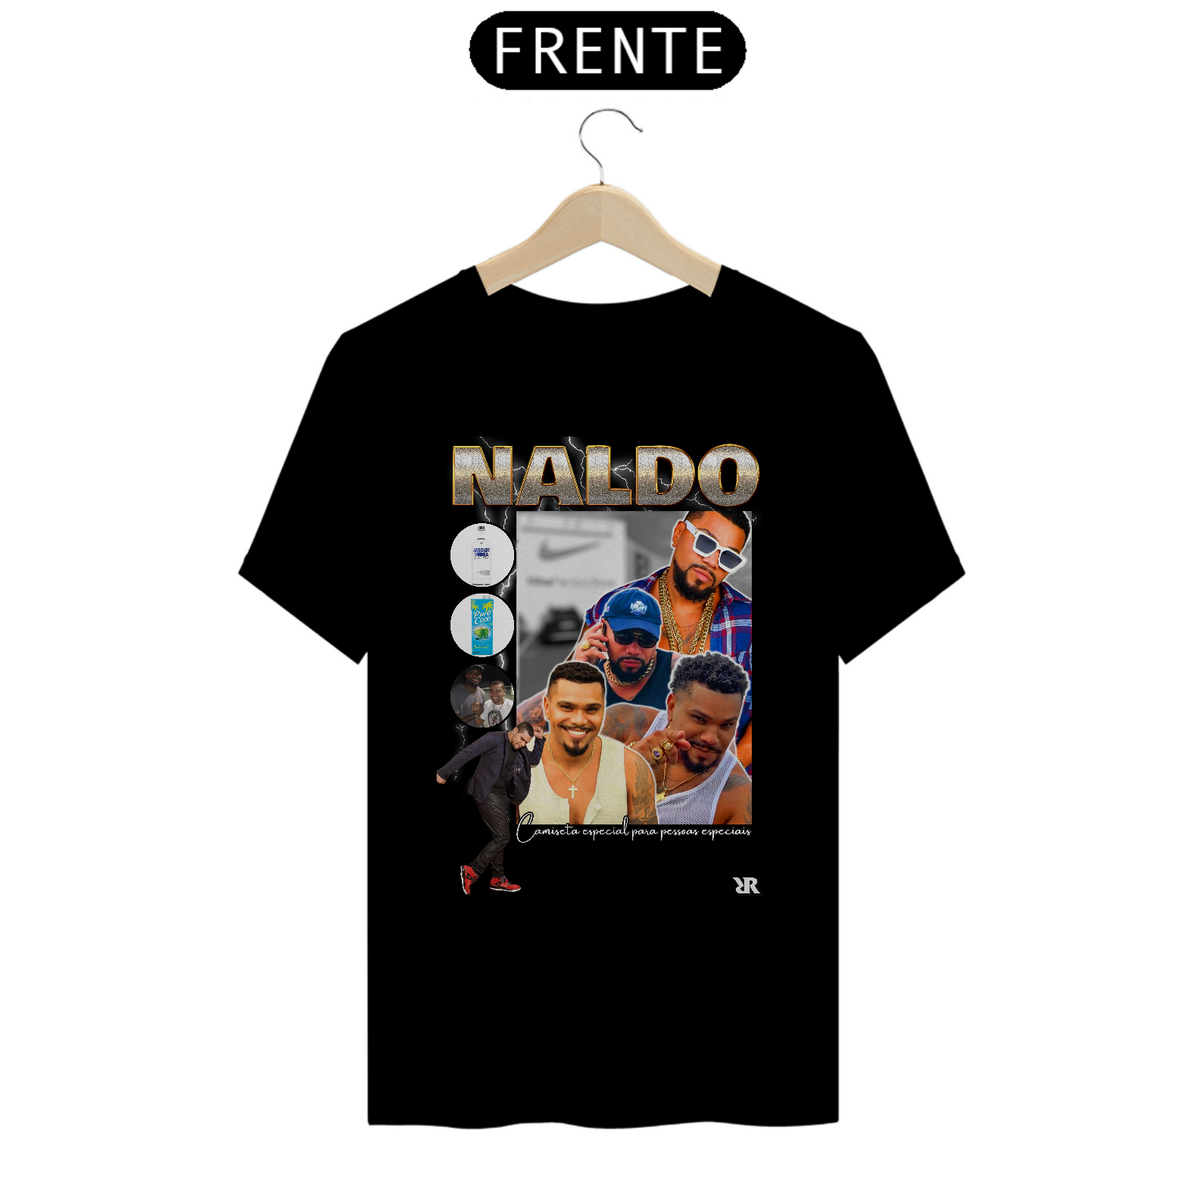 Nome do produto: Naldo - Retro Style